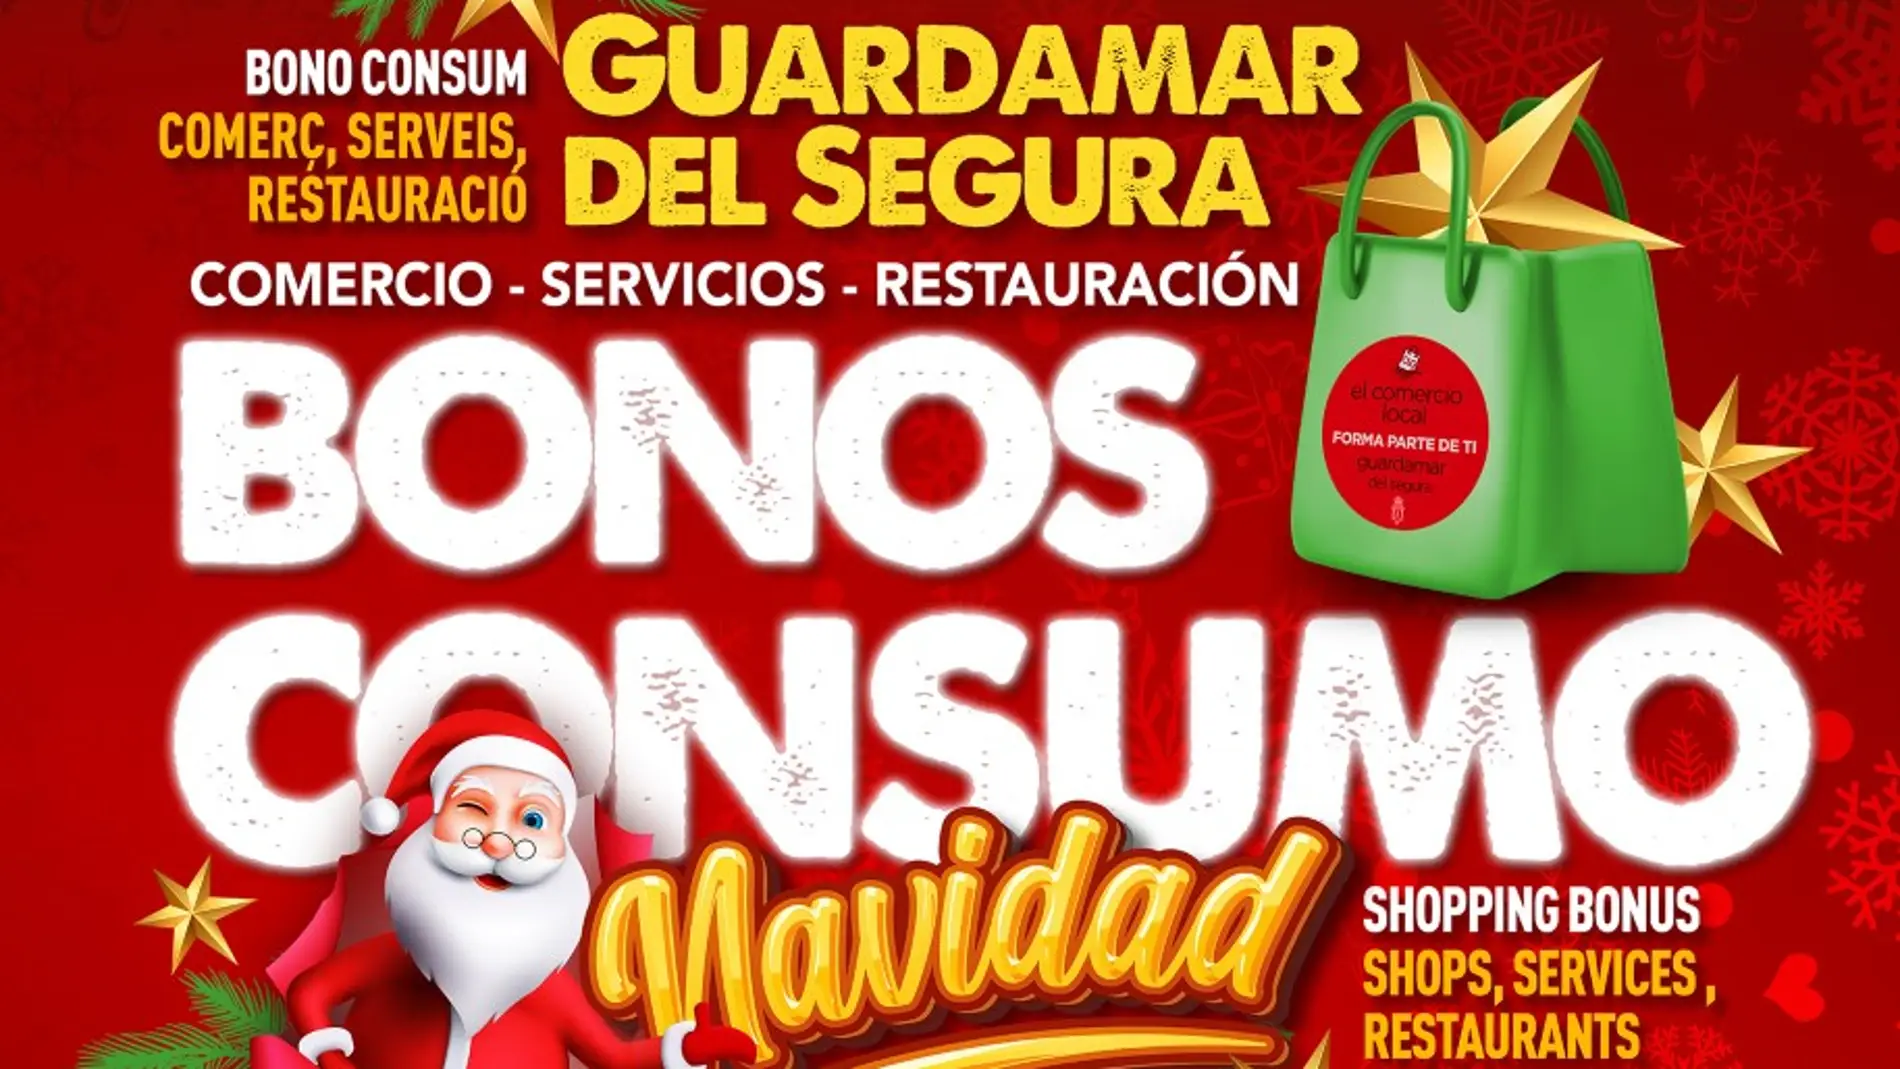 Campaña del bono consumo en Guardamar del segura para la navidad     